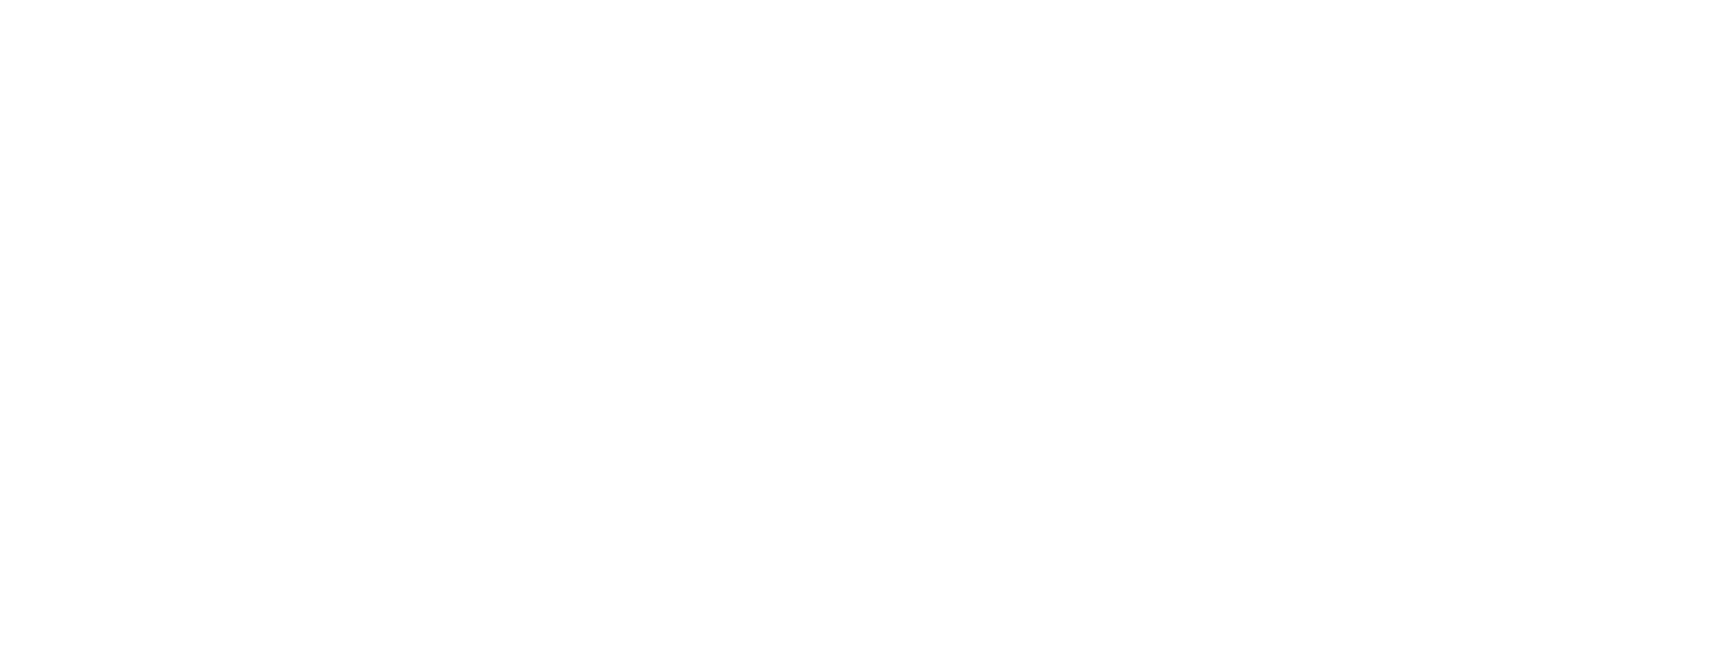 Anthology of Emo